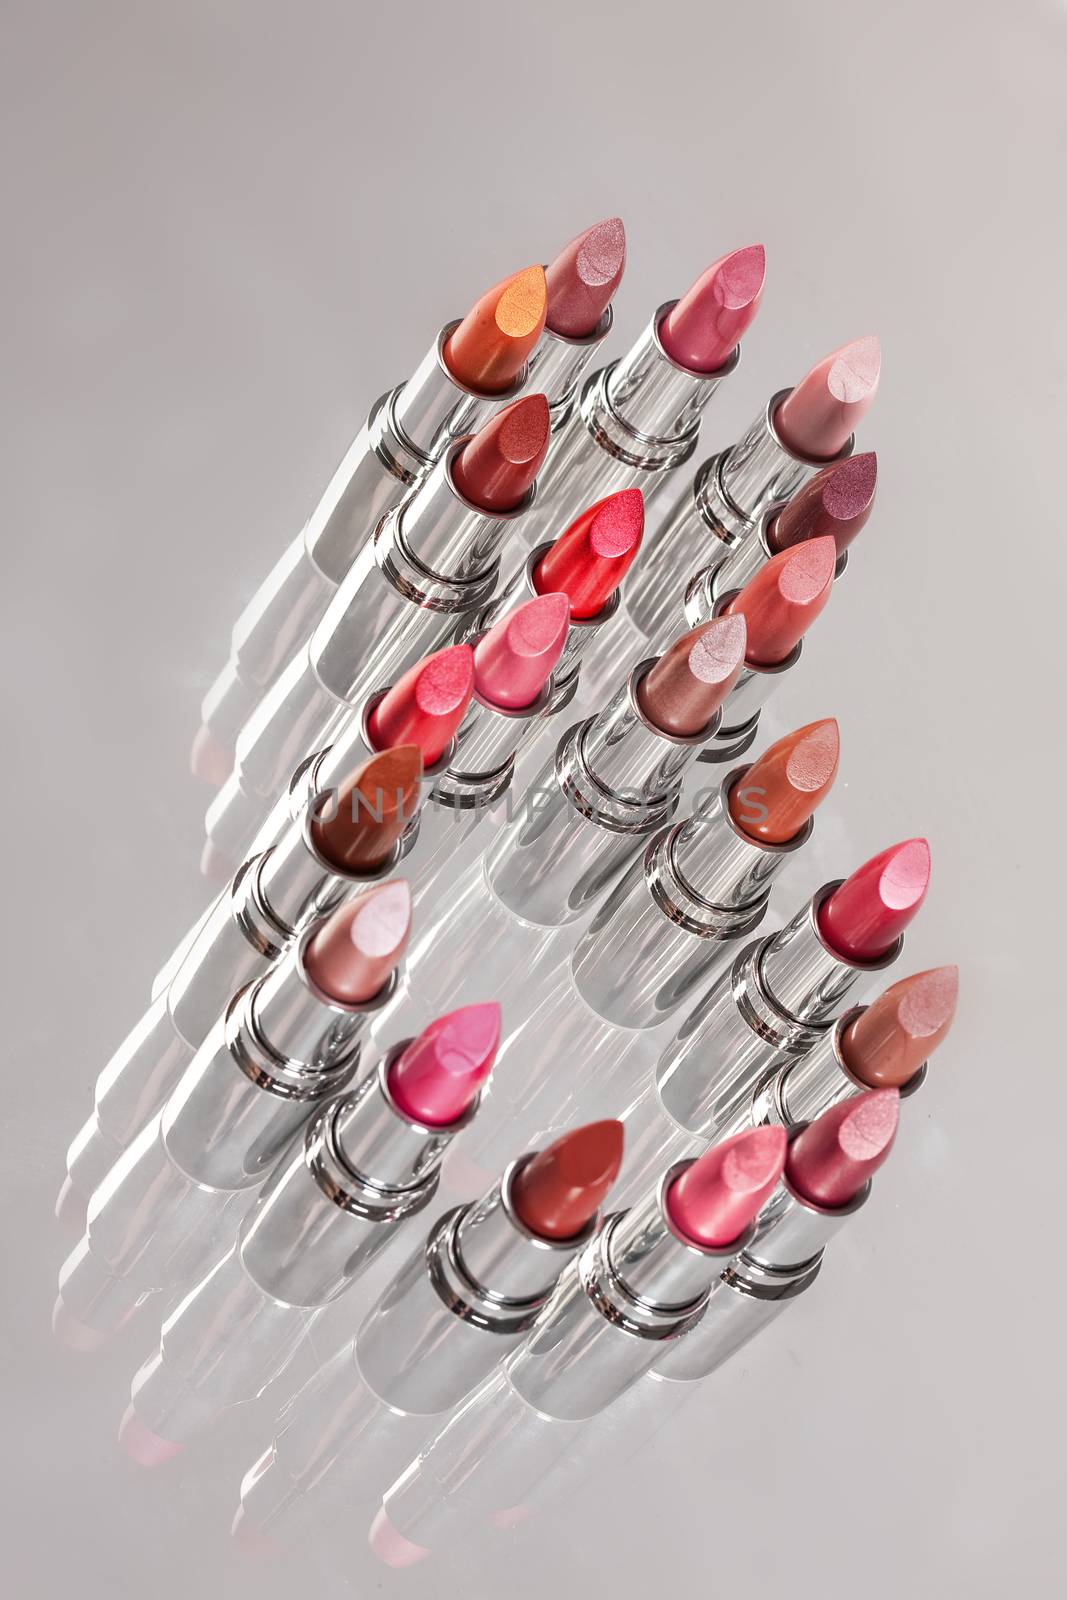 Different Lipsticks by Fotoskat